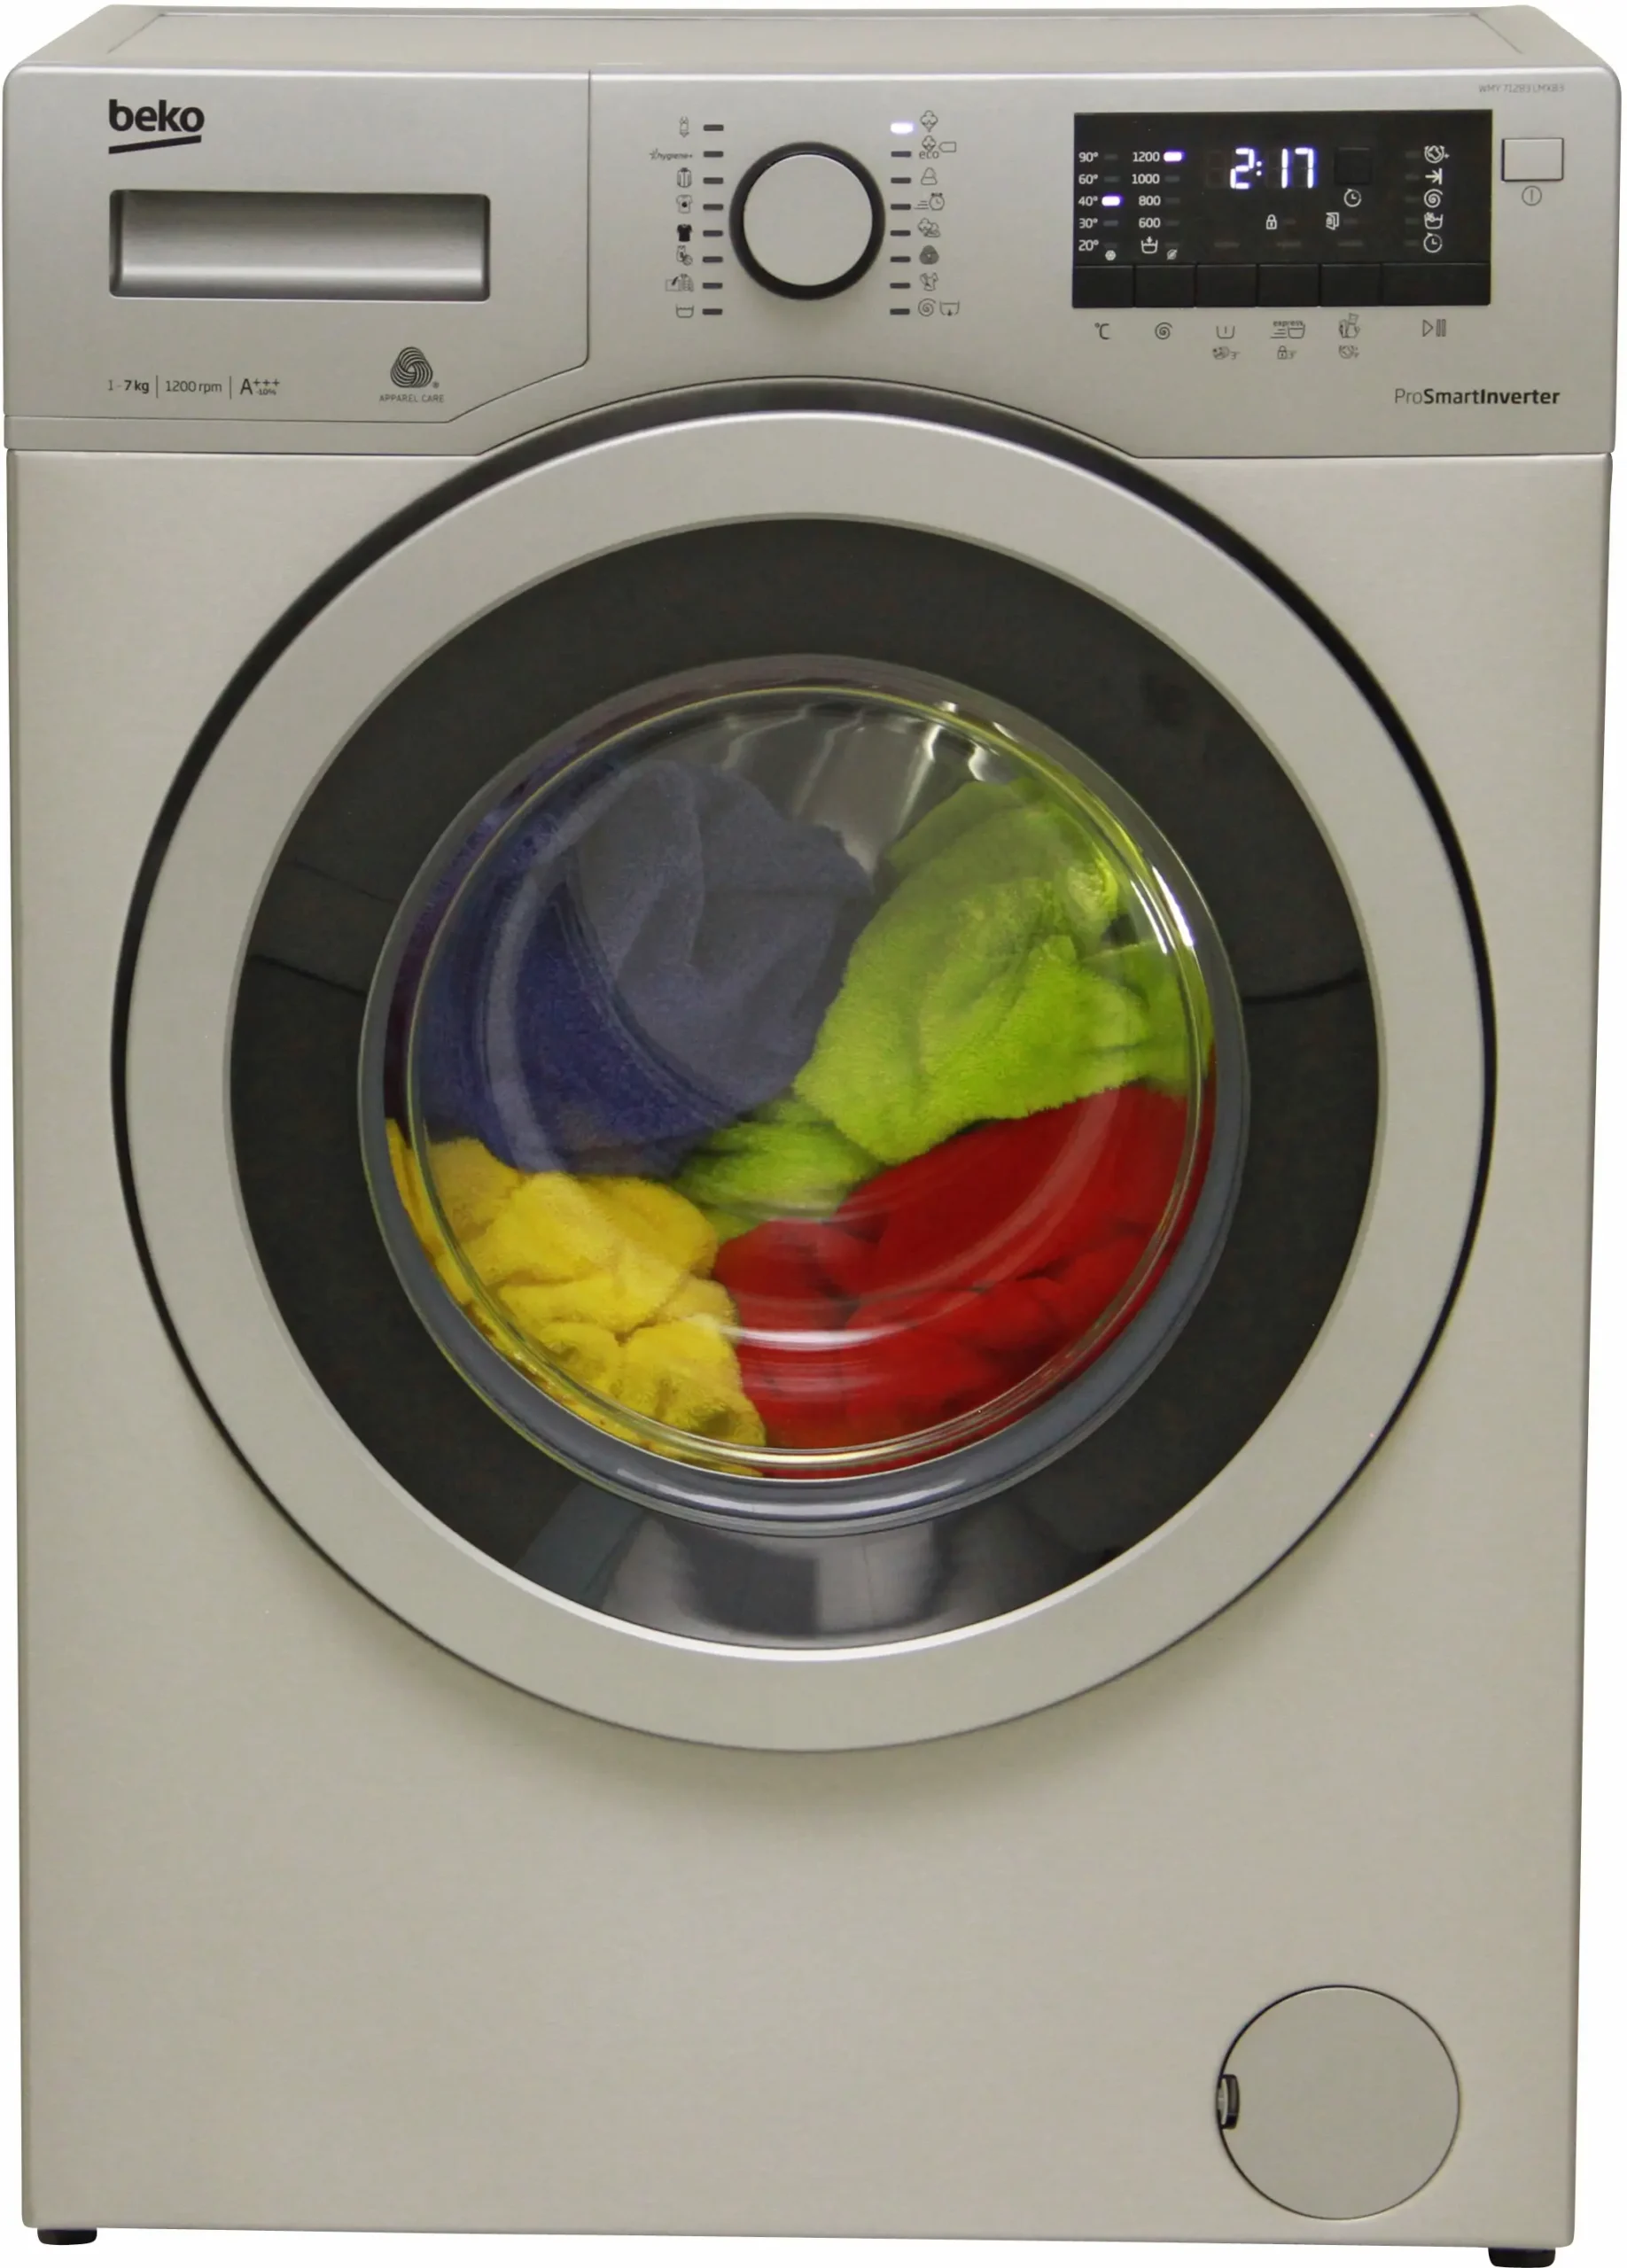 lavadoras beko opiniones ocu - Que hay que tener en cuenta al comprar una lavadora